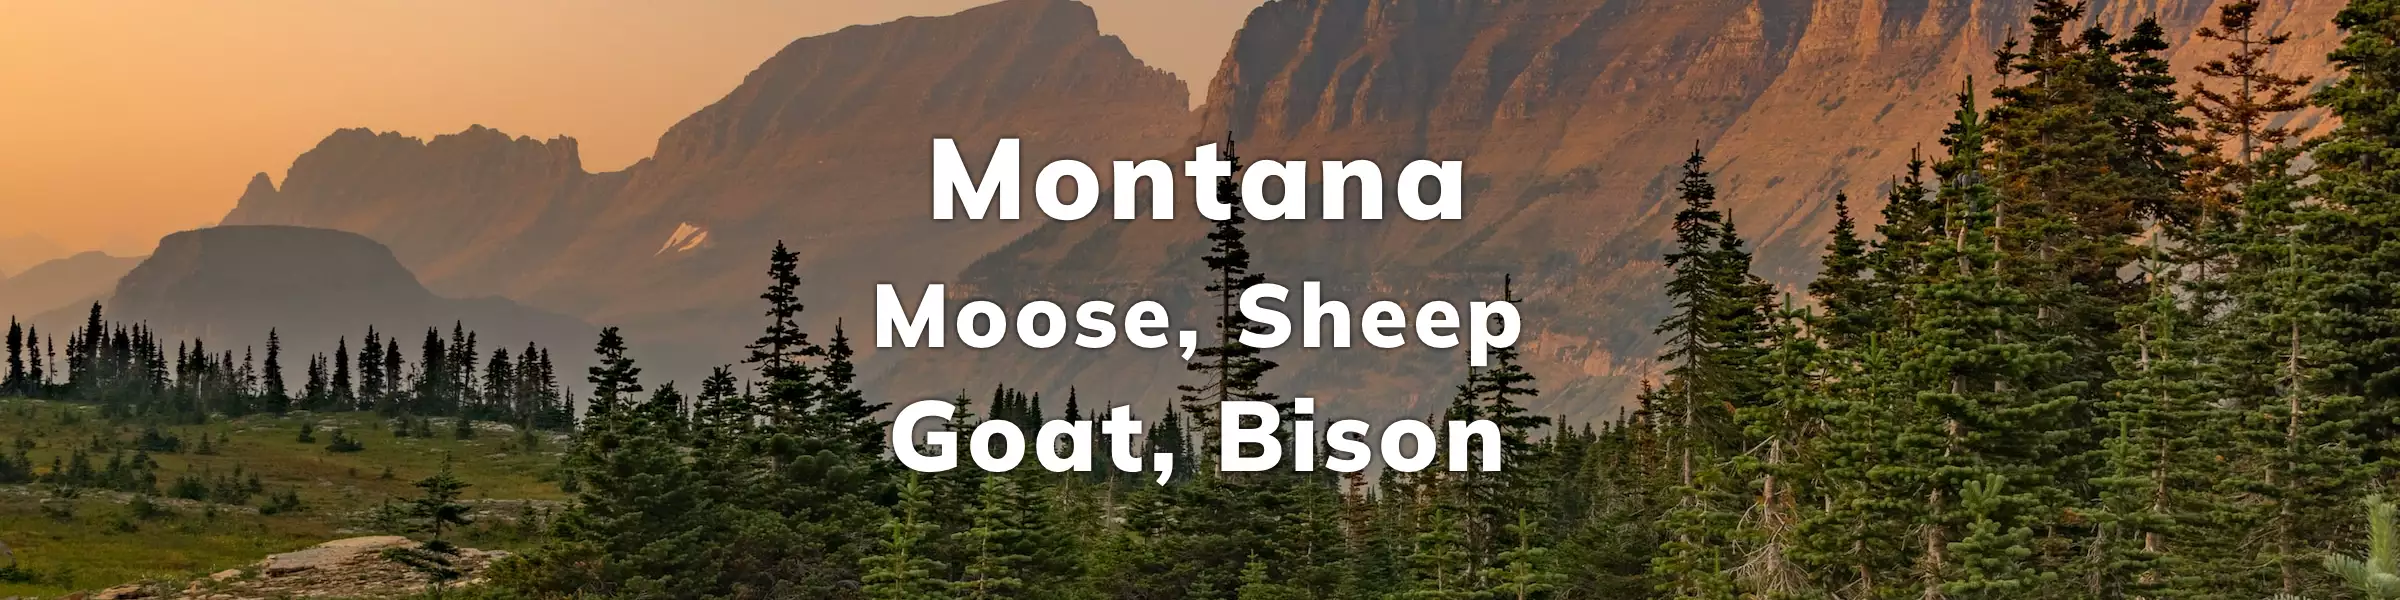 Montana Moose Sheep Goat Bison